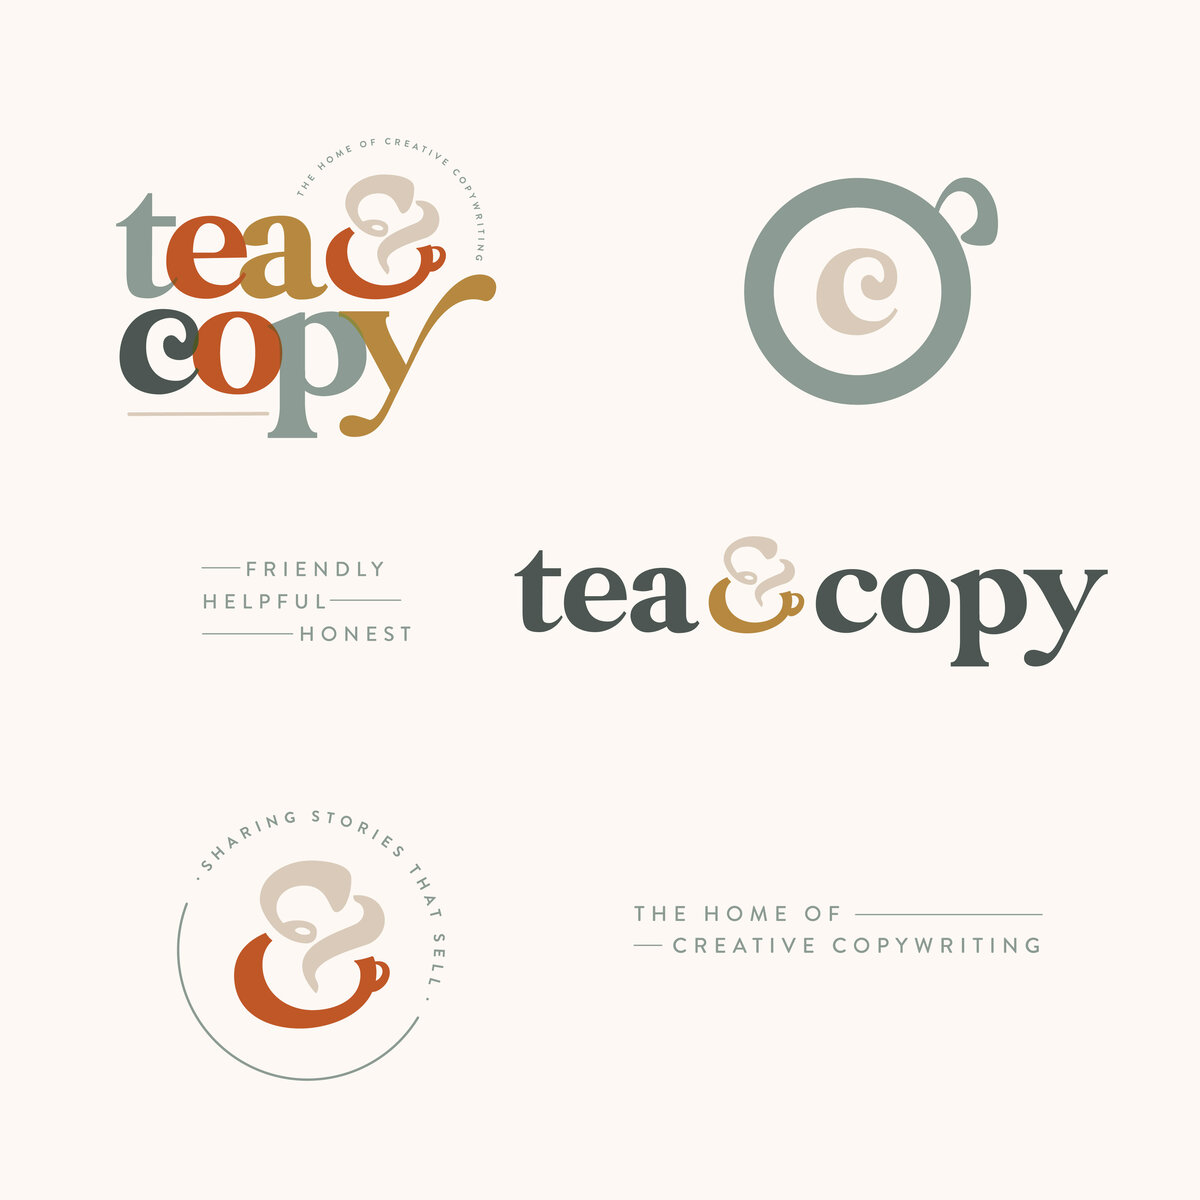 Tea & Copy logo set [v1]-20